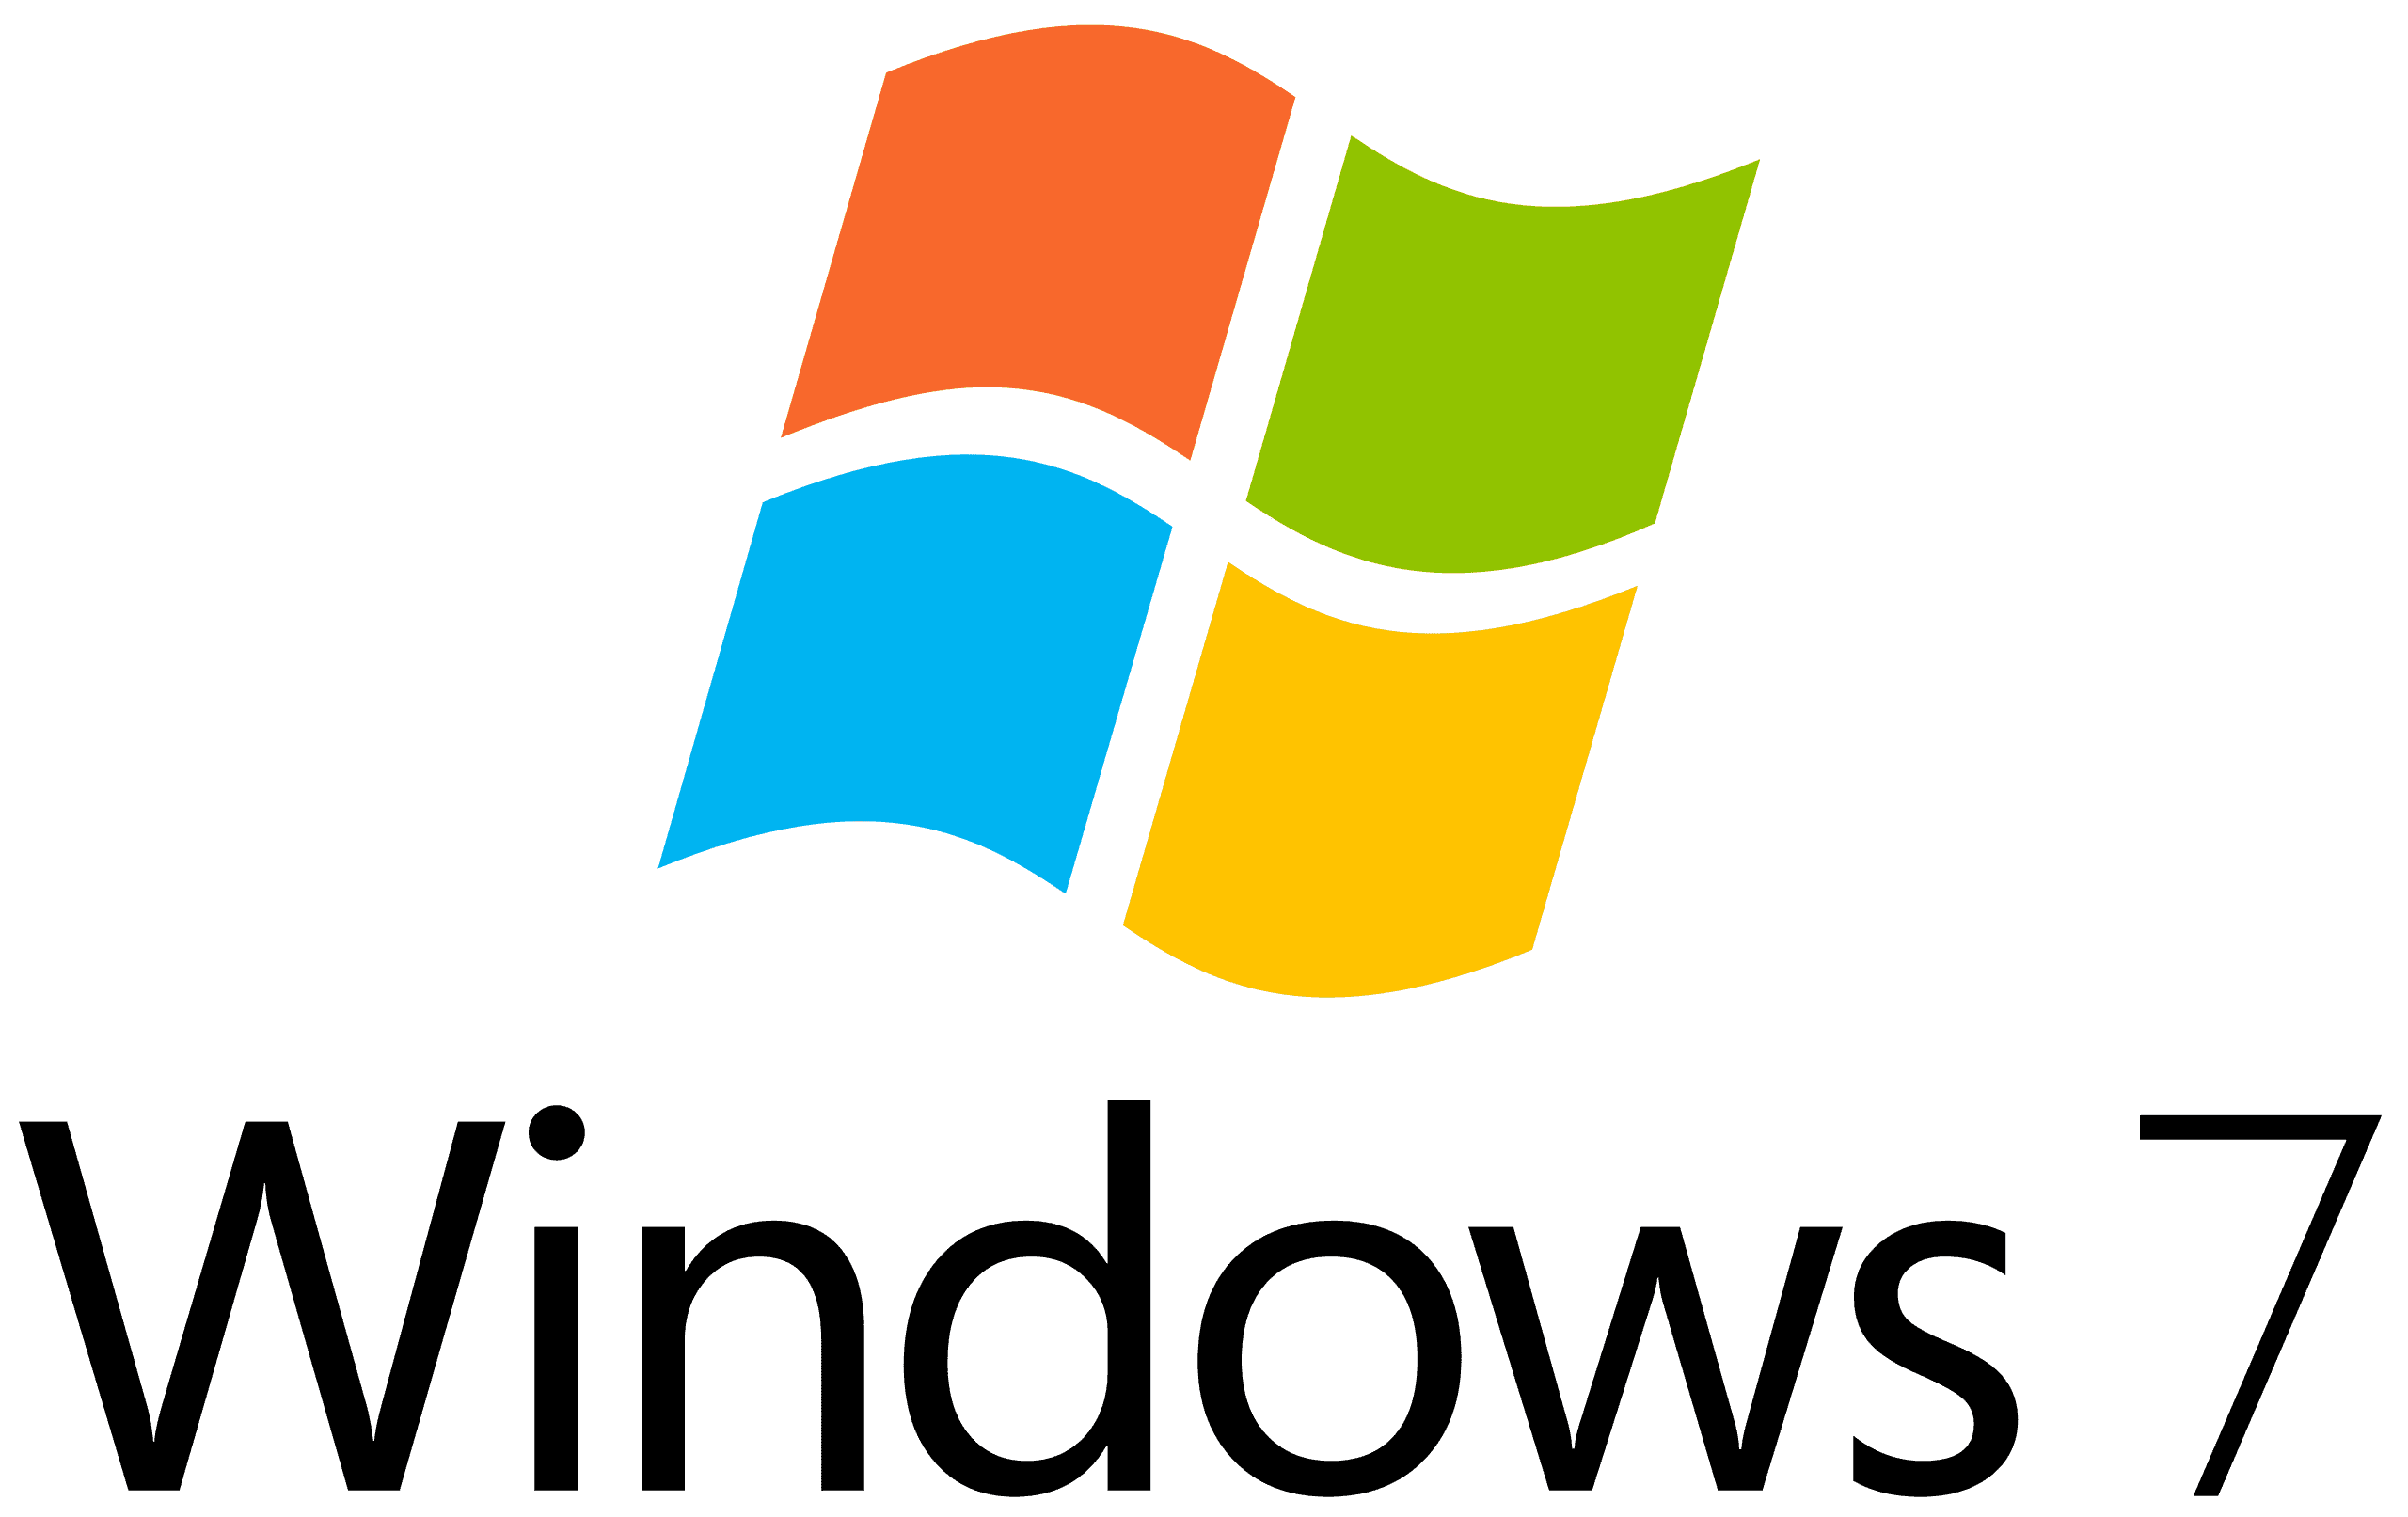 מיקרוסופט מסיימת את עדכוני האבטחה המורחבים של Windows 7 ביום שלישי הקרוב